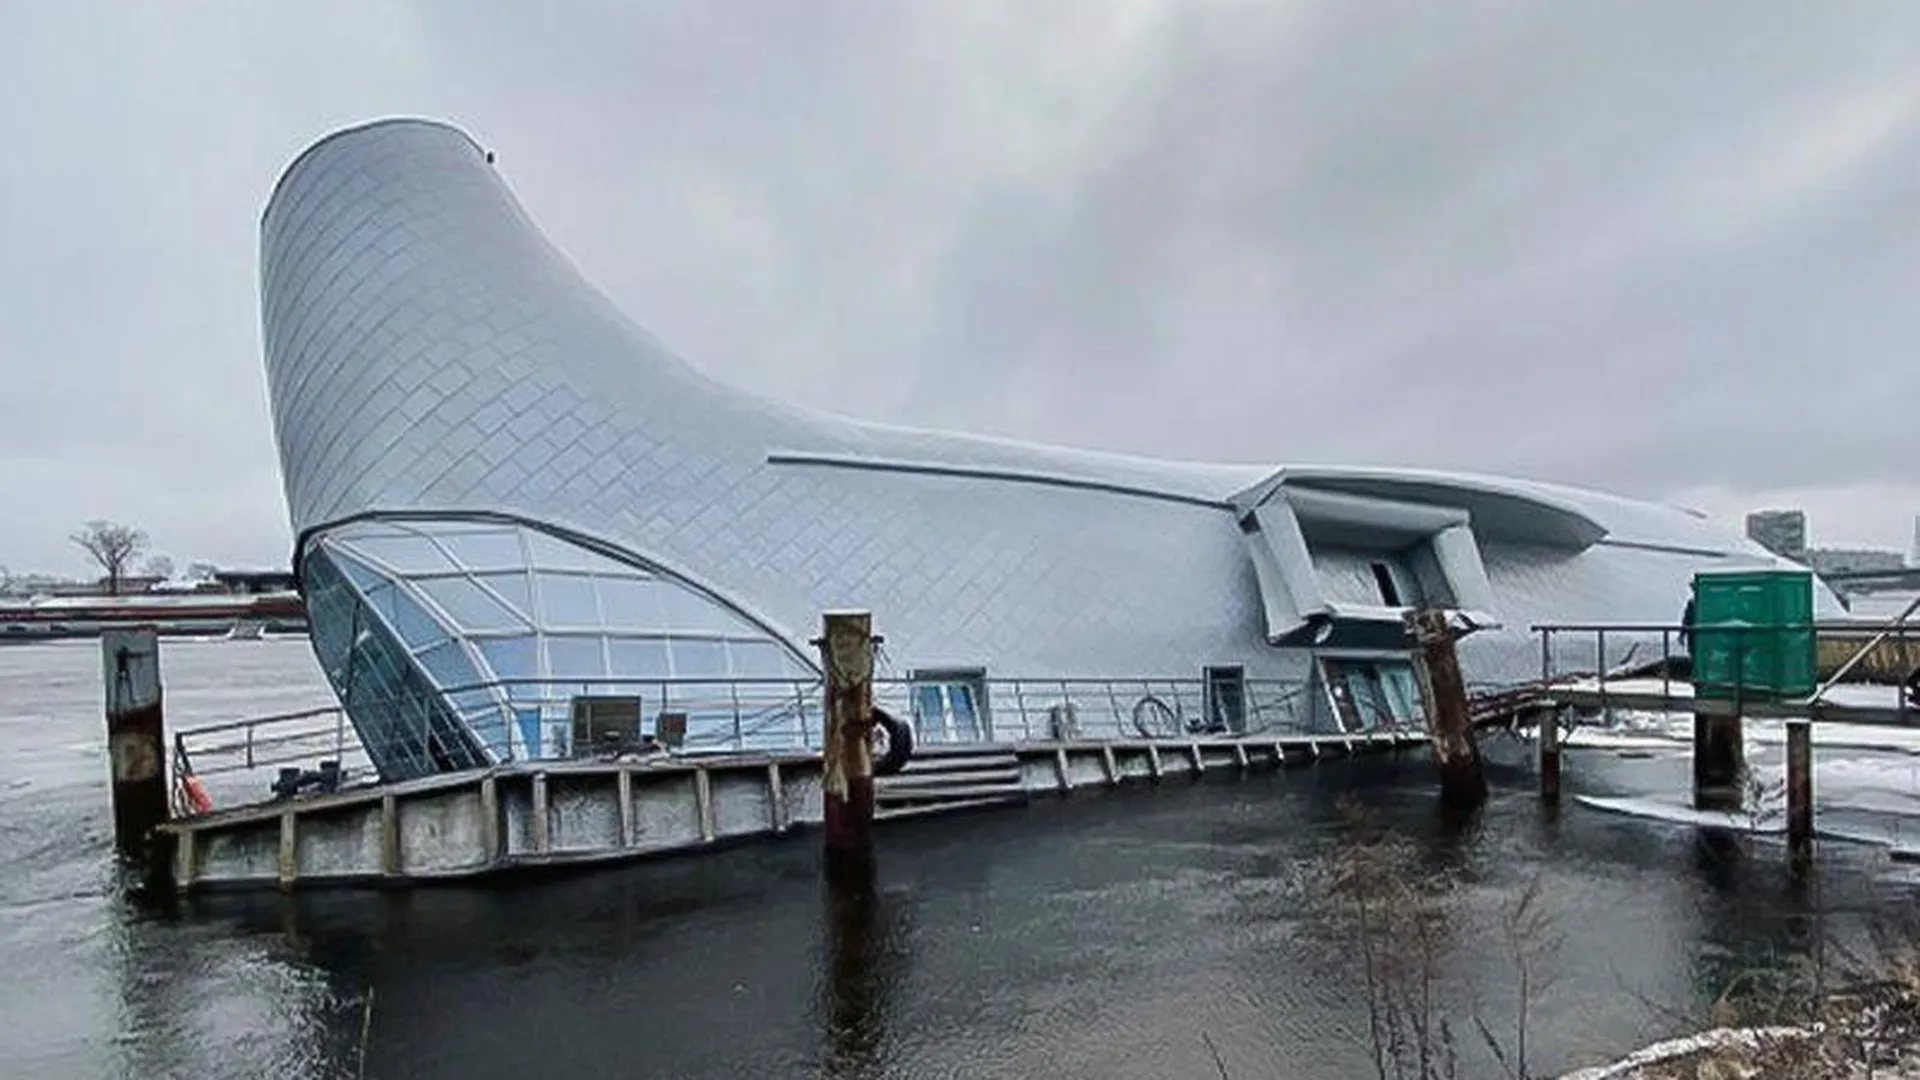 Выяснилось, из-за чего затопило плавучий ресторан «Серебряный кит» в Санкт-Петербурге